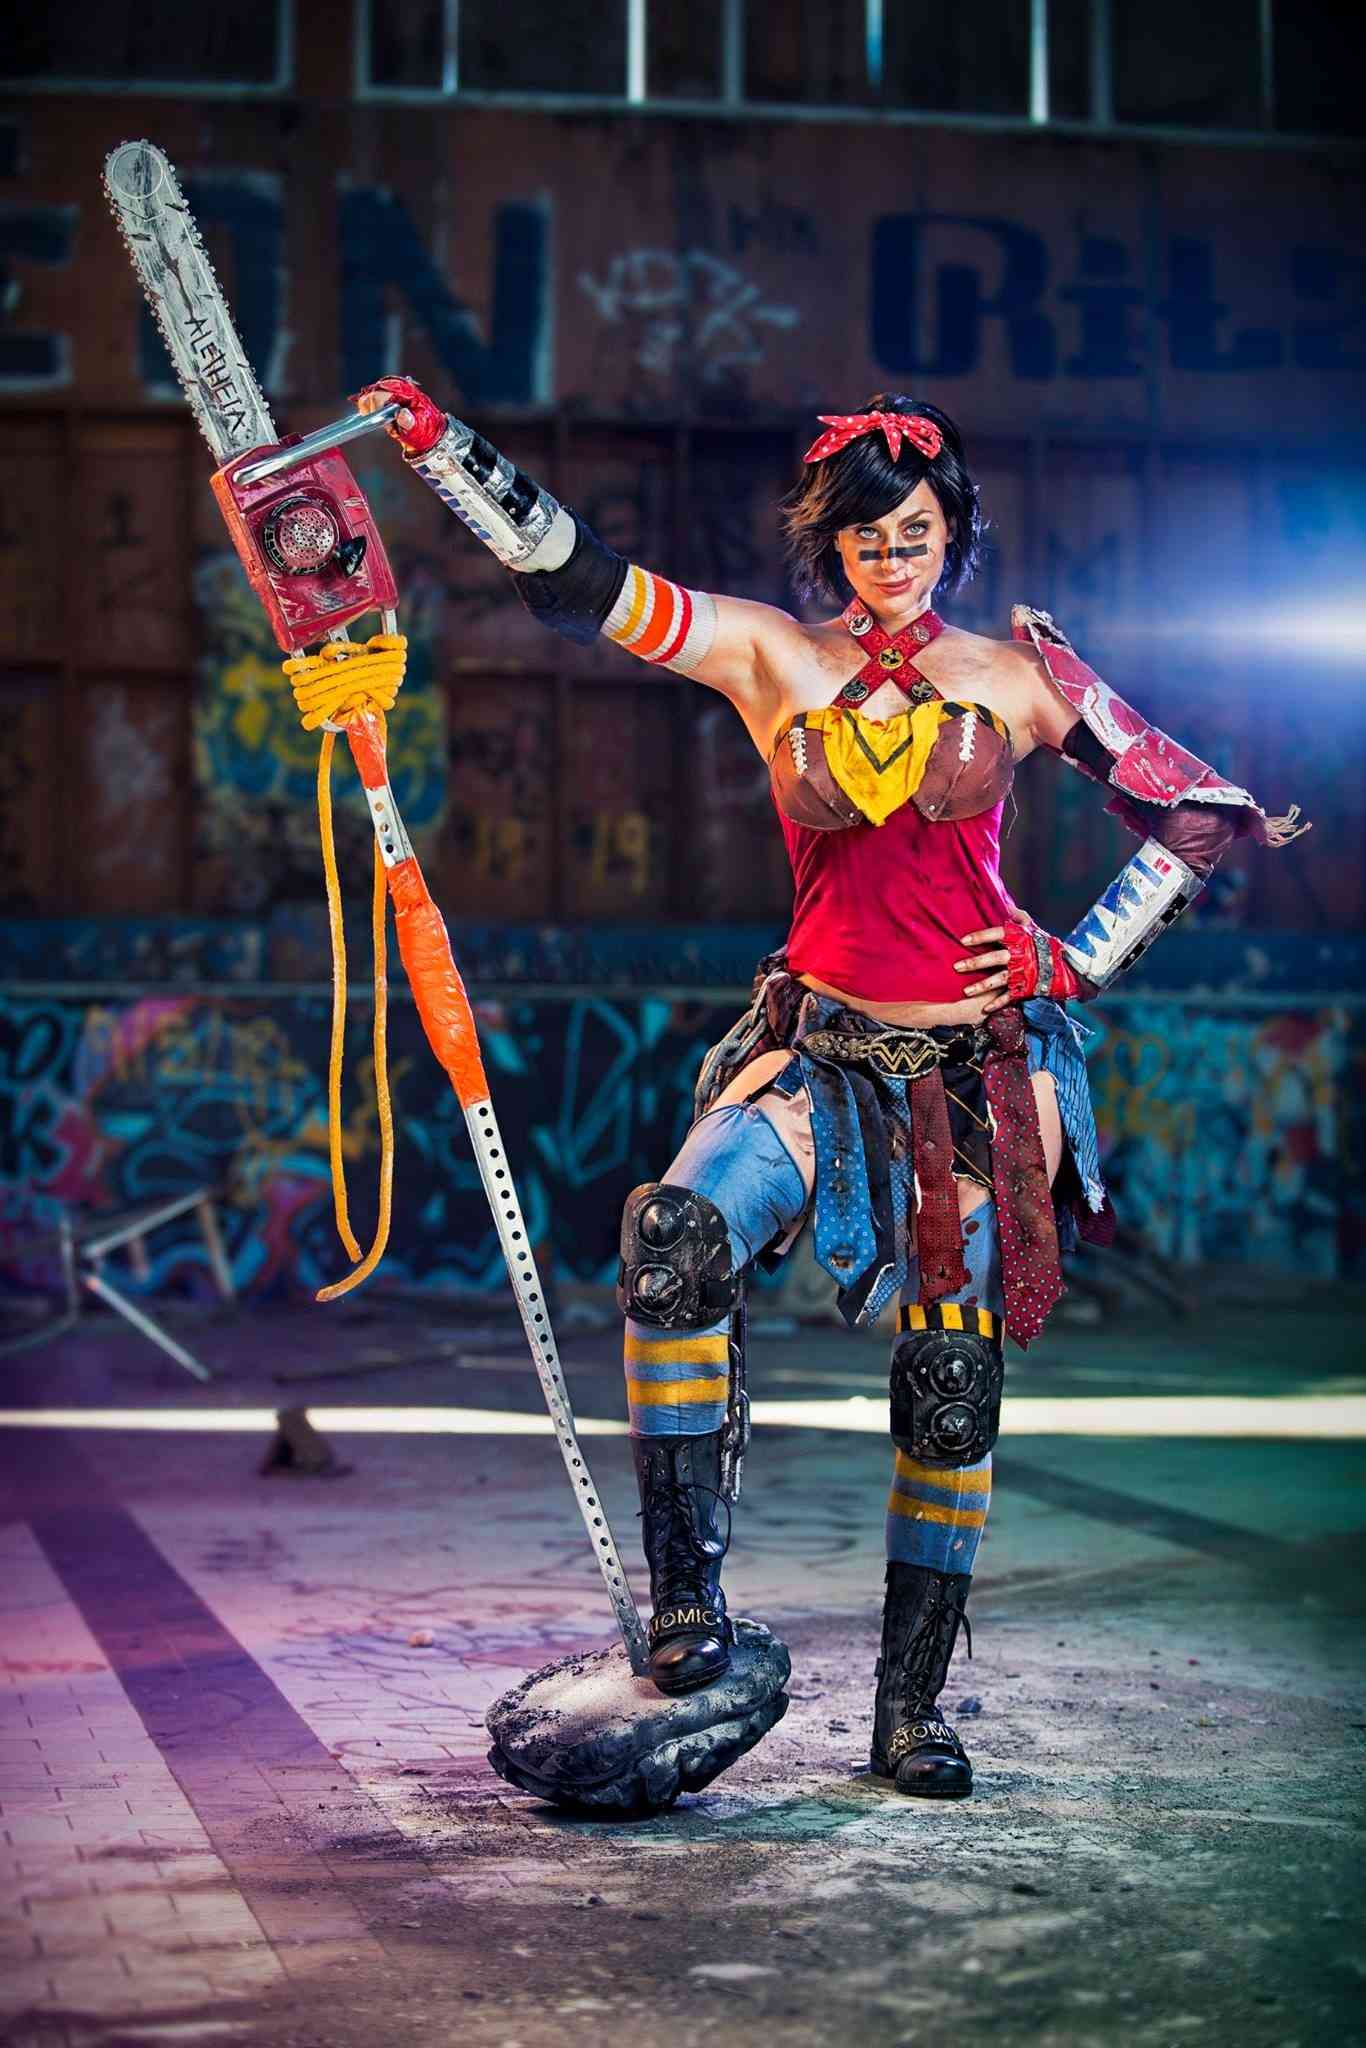 Meagan Marie Atomic Wonder Woman cosplay.